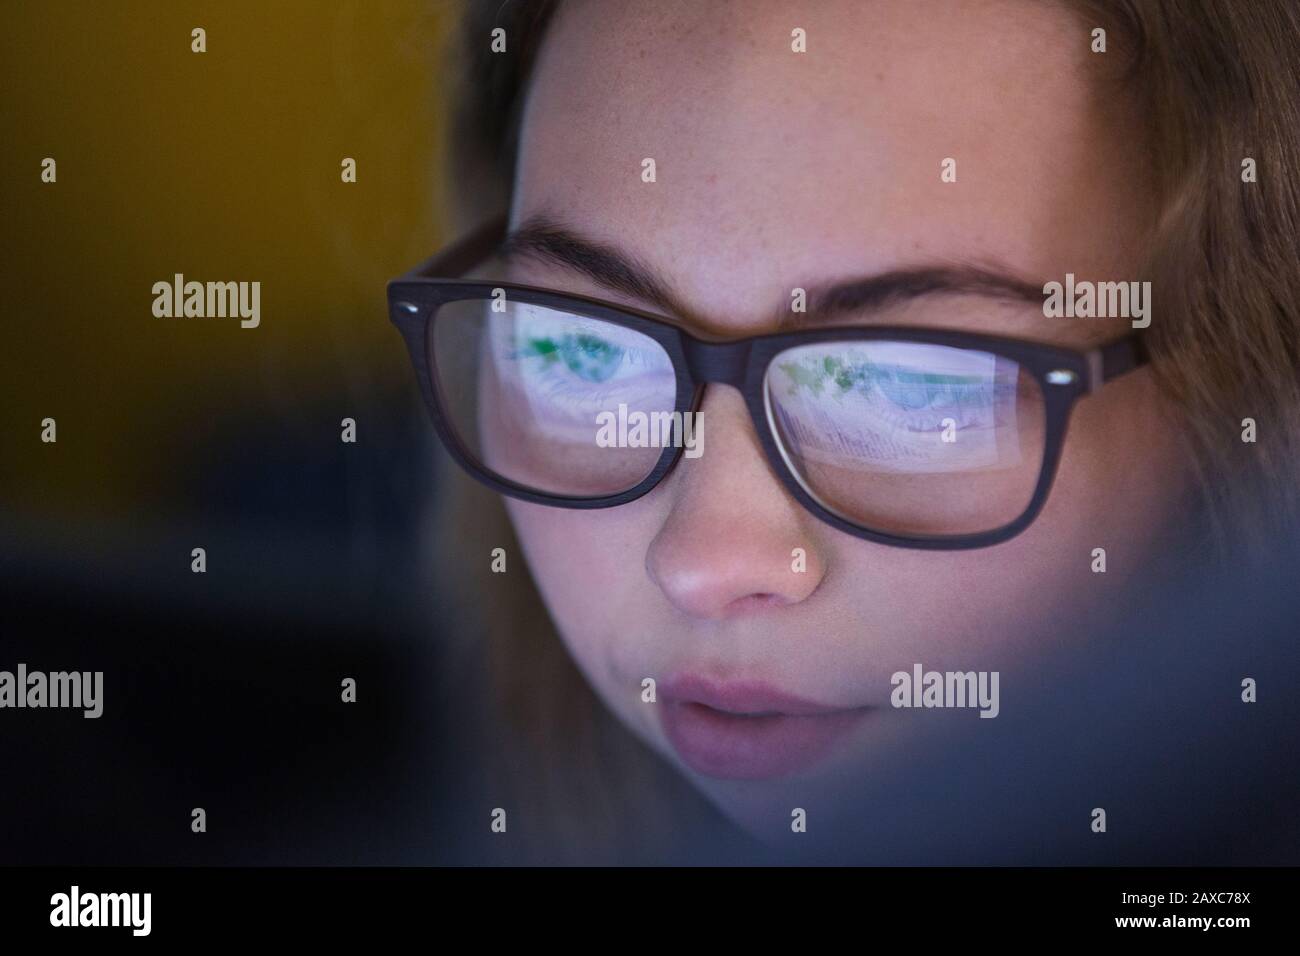 Nahaufnahme des Teenager-Mädchens in Brillen, die den Bildschirm des Geräts betrachten Stockfoto